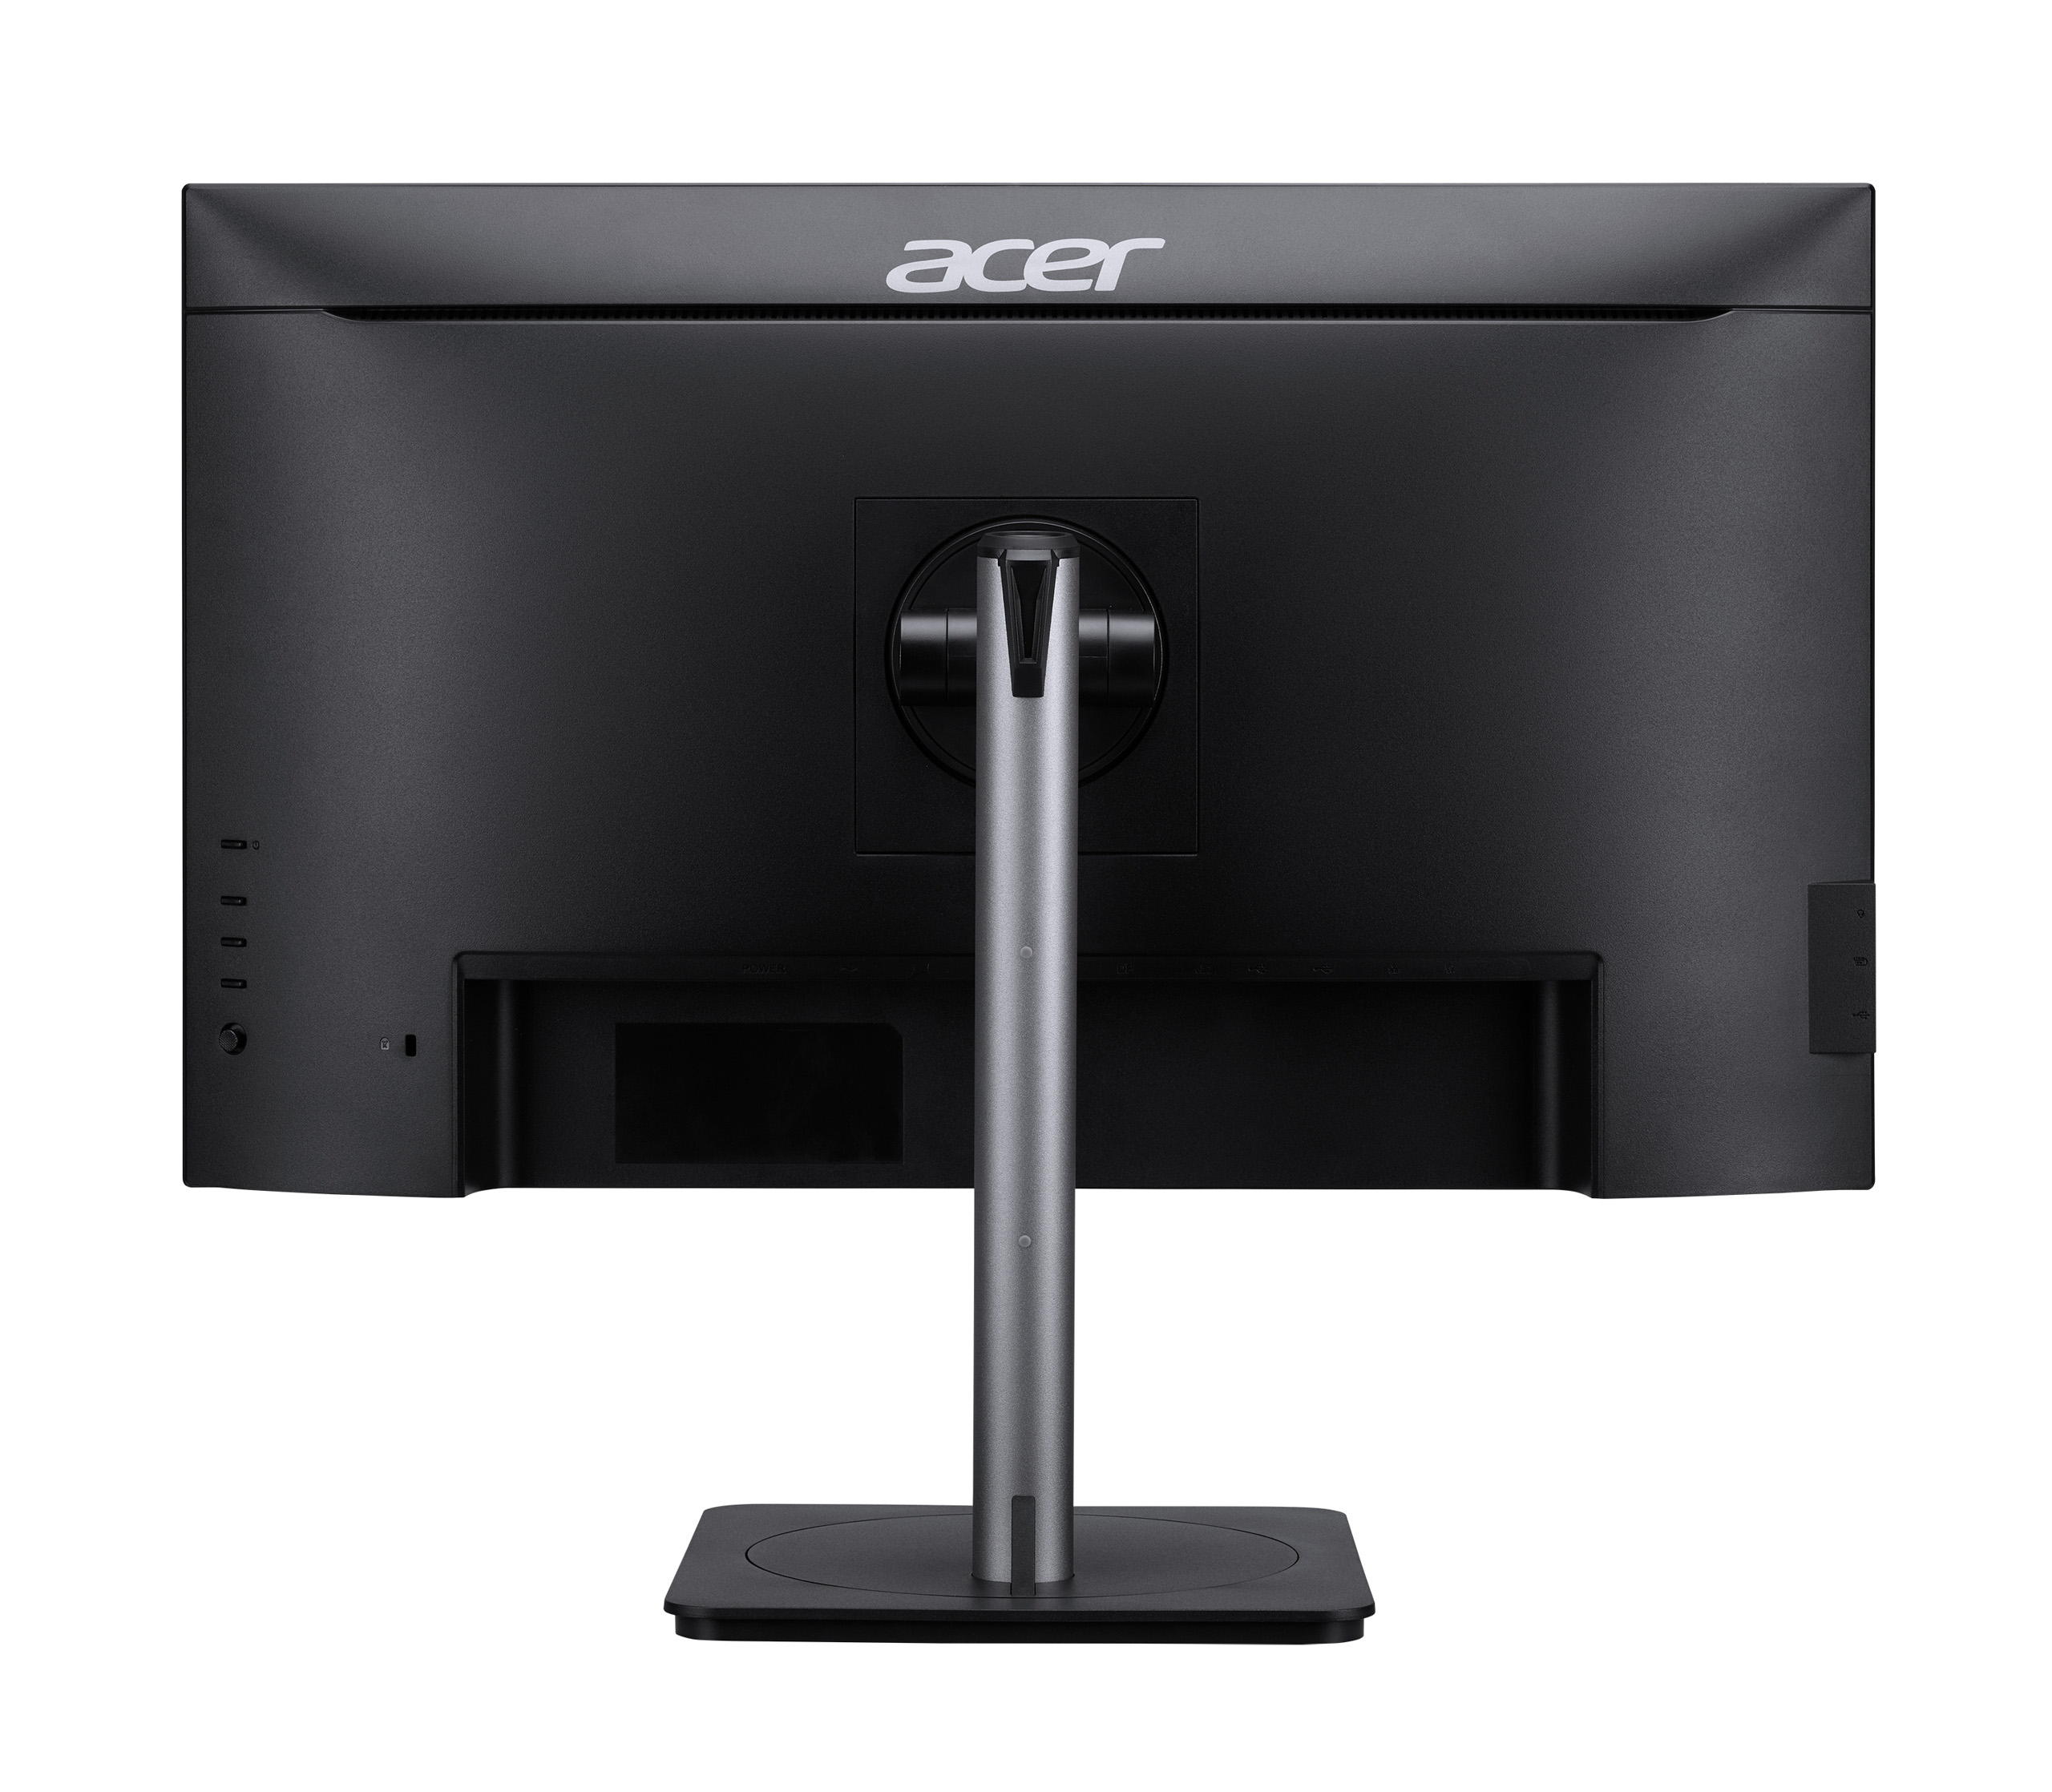 Acer ra mắt loạt màn hình mới và máy chiếu 4K phục vụ giải trí gia đình